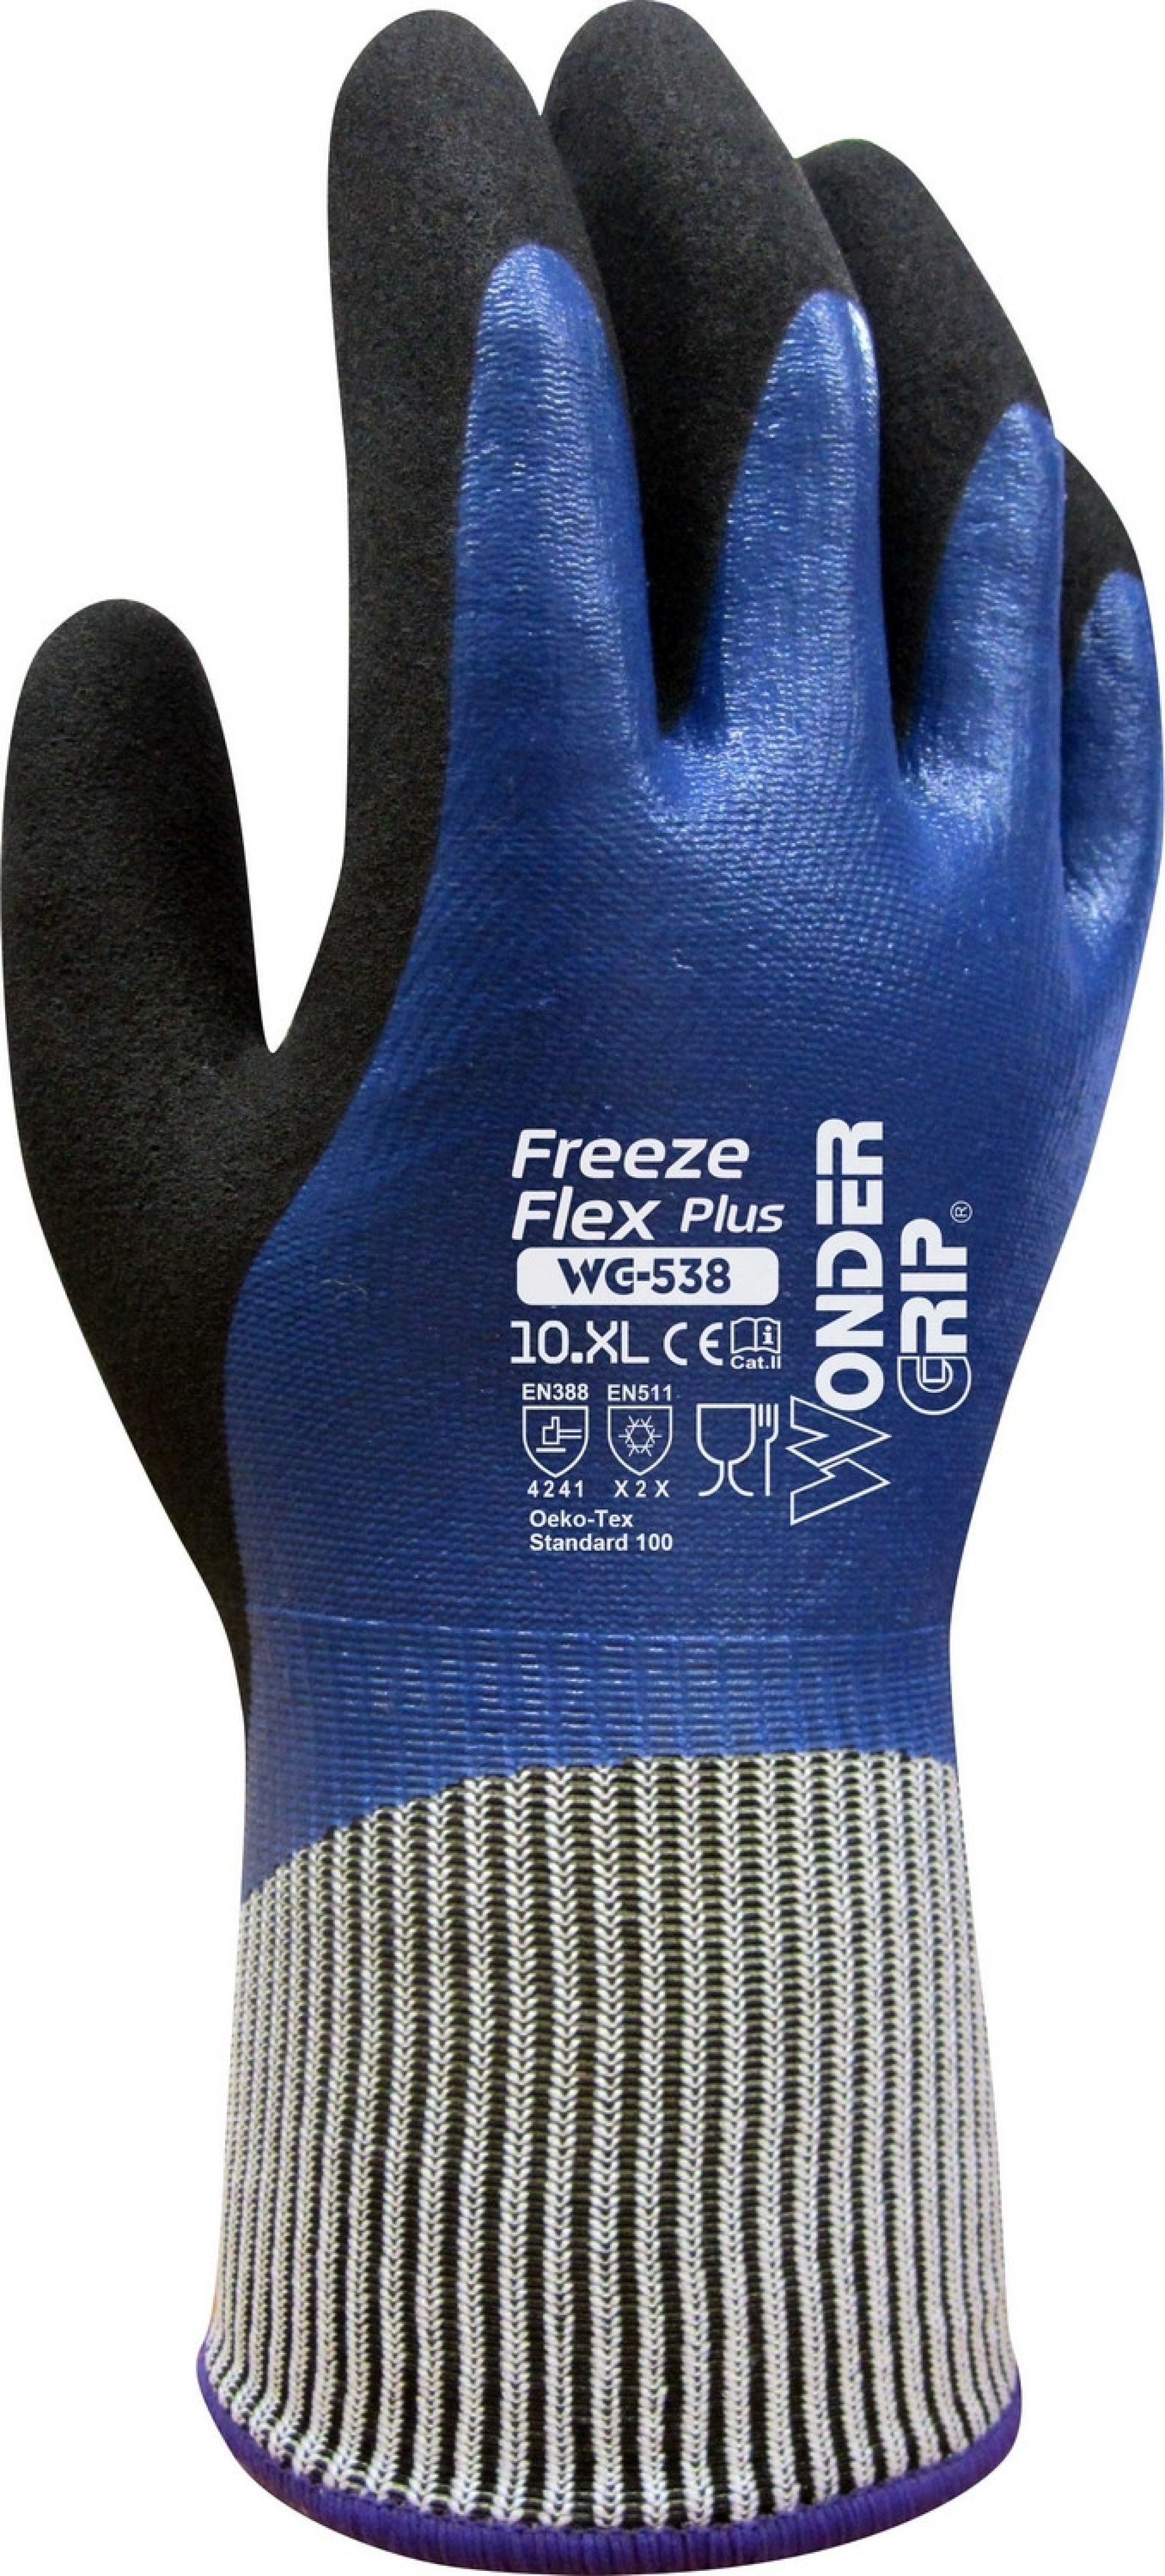 WG-538 Freeze Flex Plus